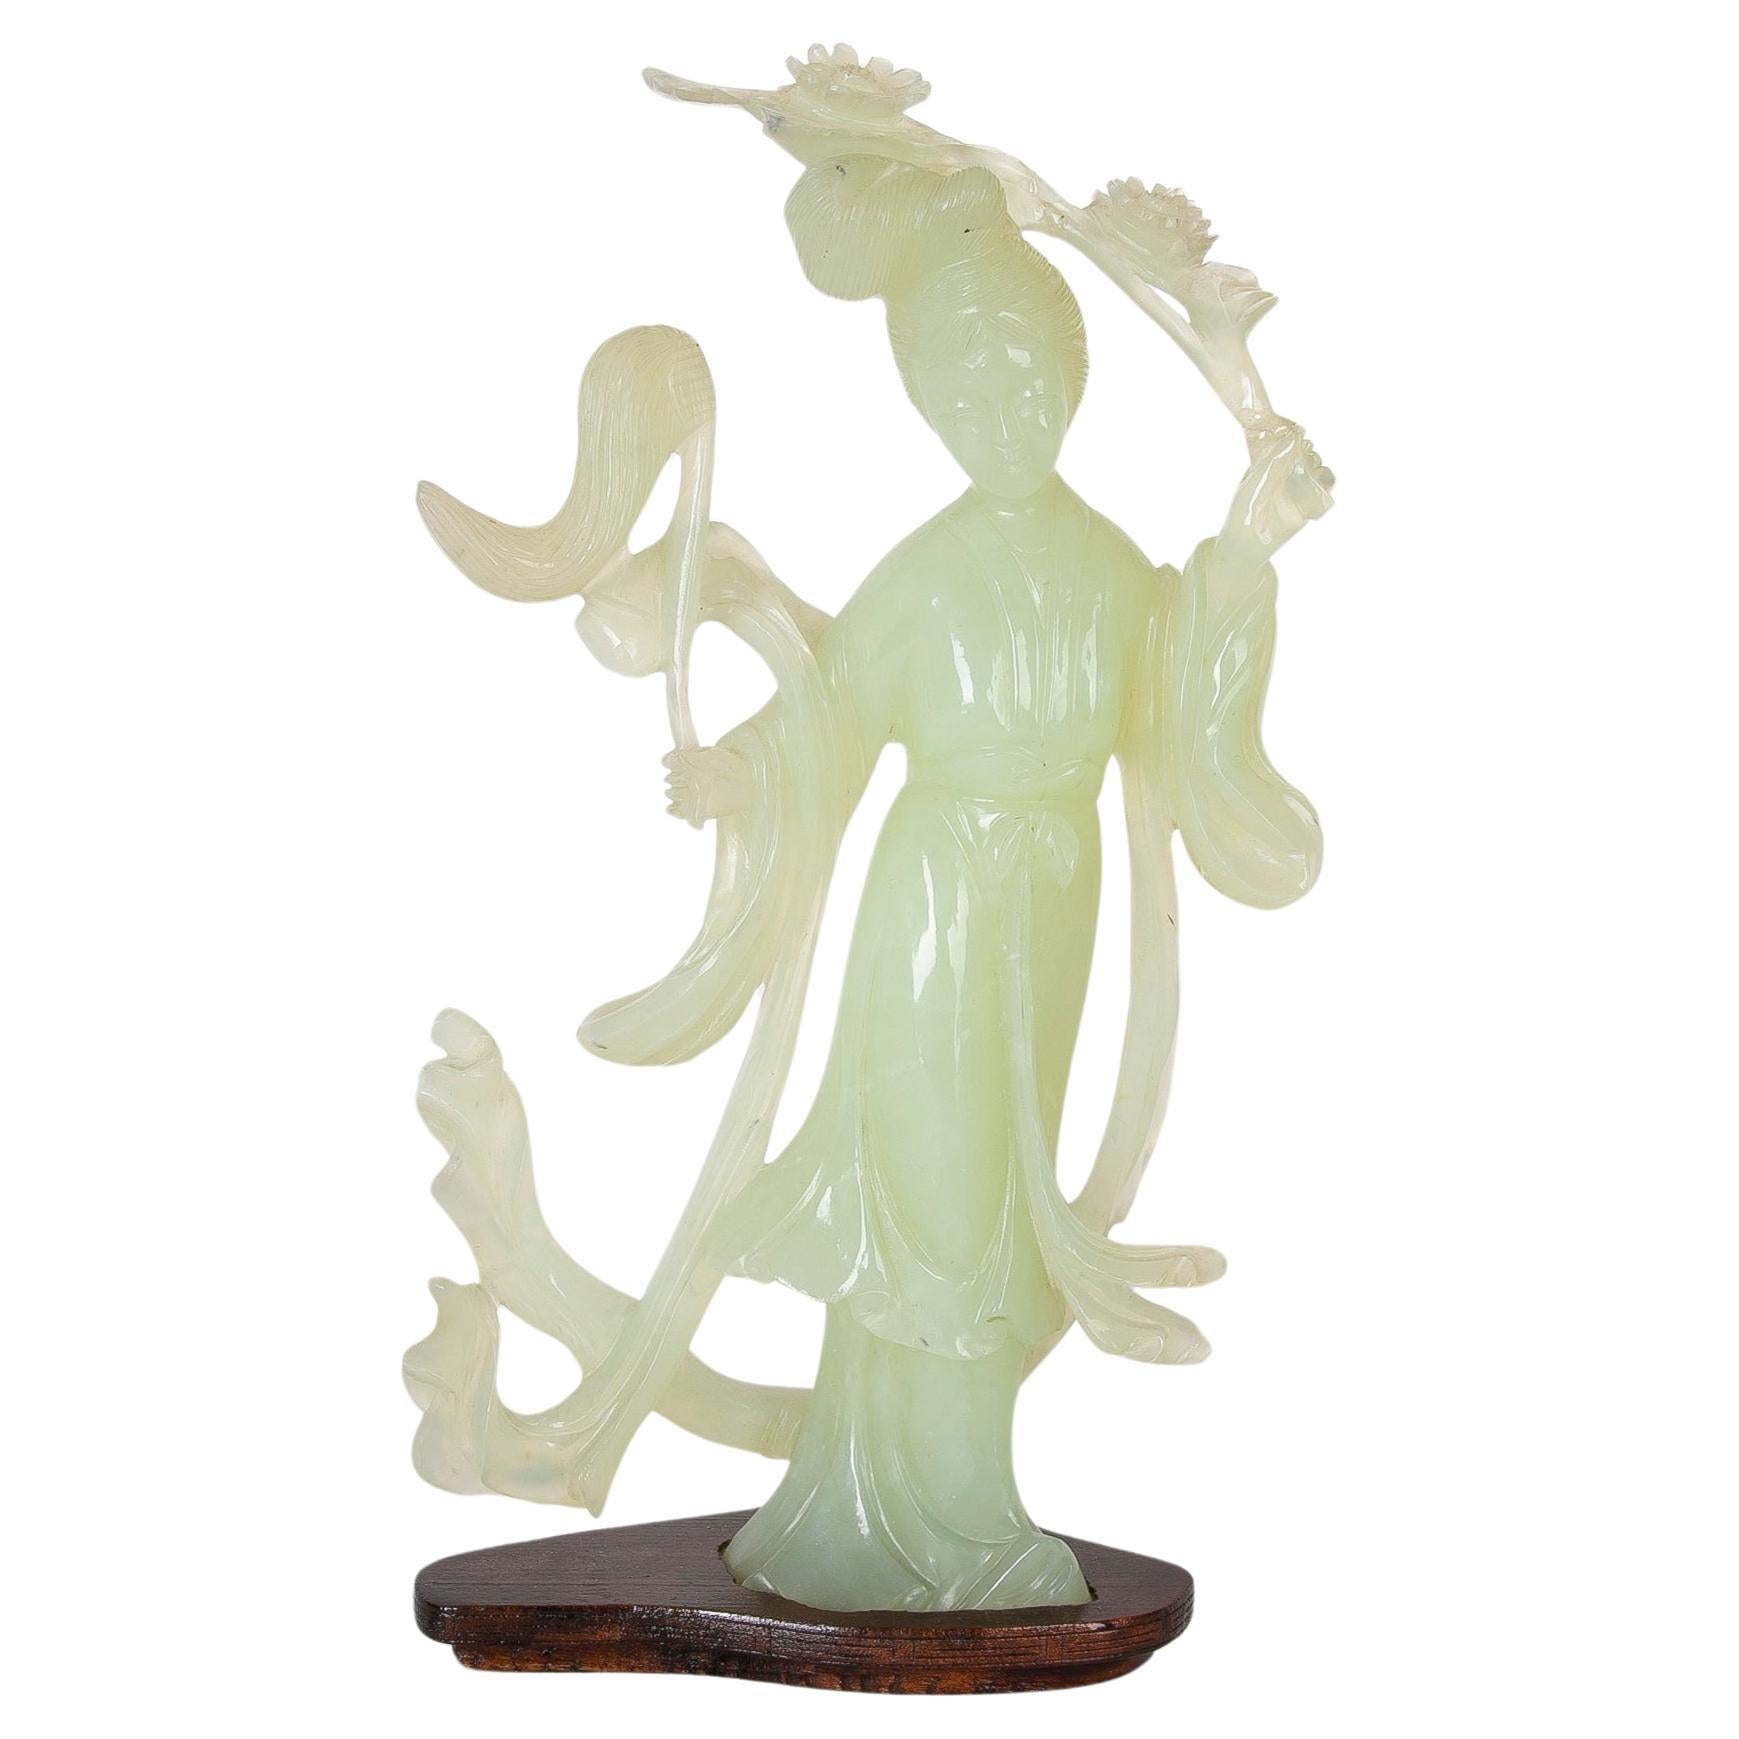 Figurine en jadéite sculptée à la main d'une femme orientale sur une base en bois